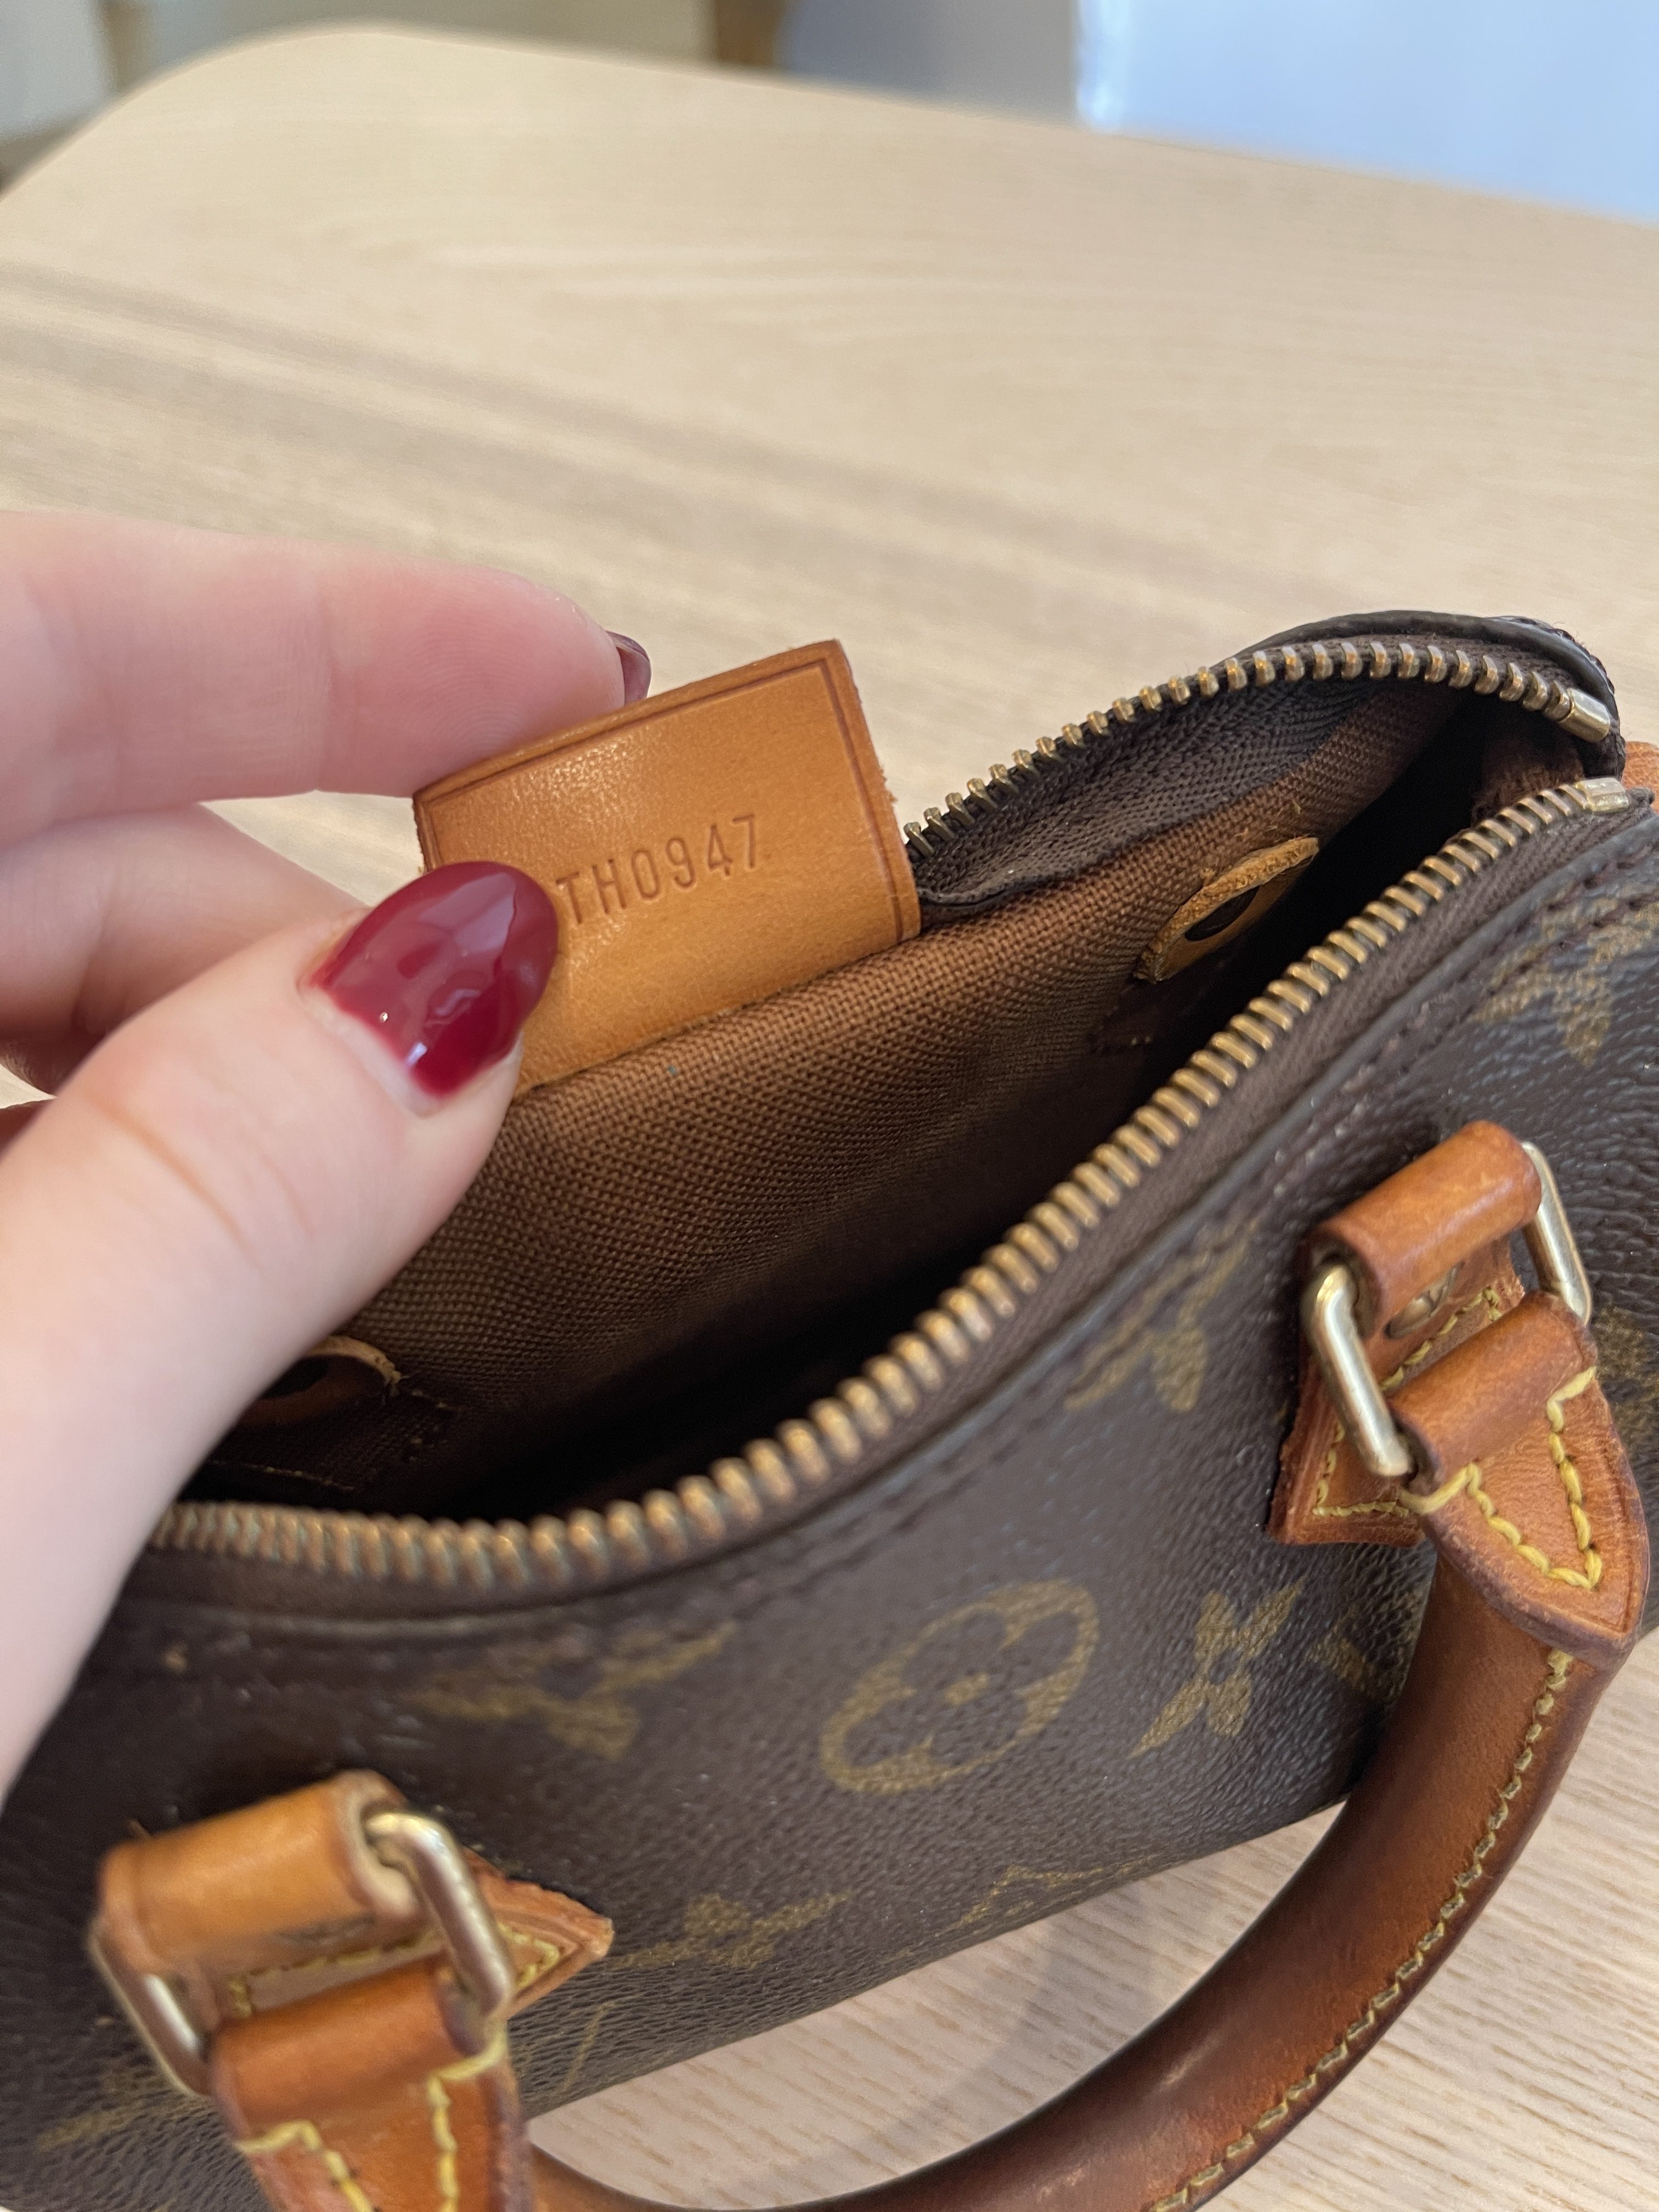 Speedy Mini HL Monogram – Keeks Designer Handbags